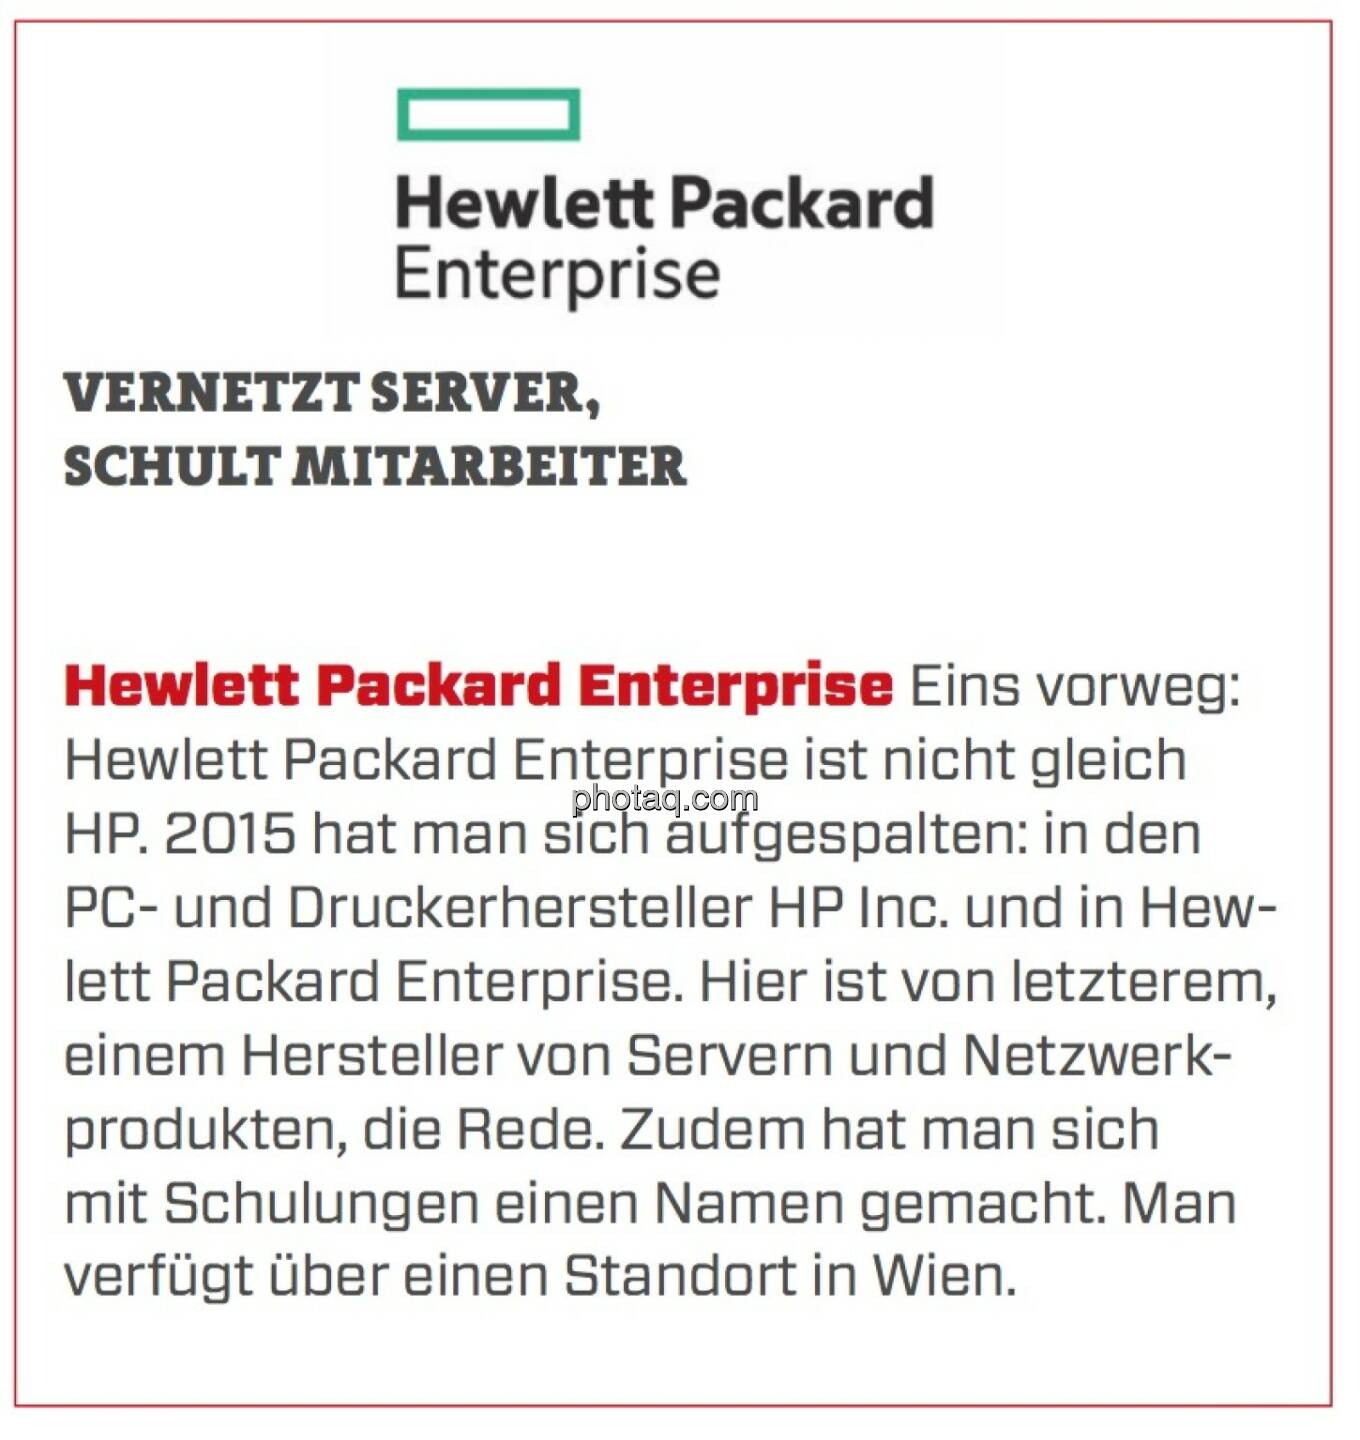 Hewlett Packard Enterprise - Vernetzt Server, schult Mitarbeiter: Eins vorweg: Hewlett Packard Enterprise ist nicht gleich HP. 2015 hat man sich aufgespalten: in den PC- und Druckerhersteller HP Inc. und in Hew­lett Packard Enterprise. Hier ist von letzterem, einem Hersteller von Servern und Netzwerkprodukten, die Rede. Zudem hat man sich mit Schulungen einen Namen gemacht. Man verfügt über einen Standort in Wien.